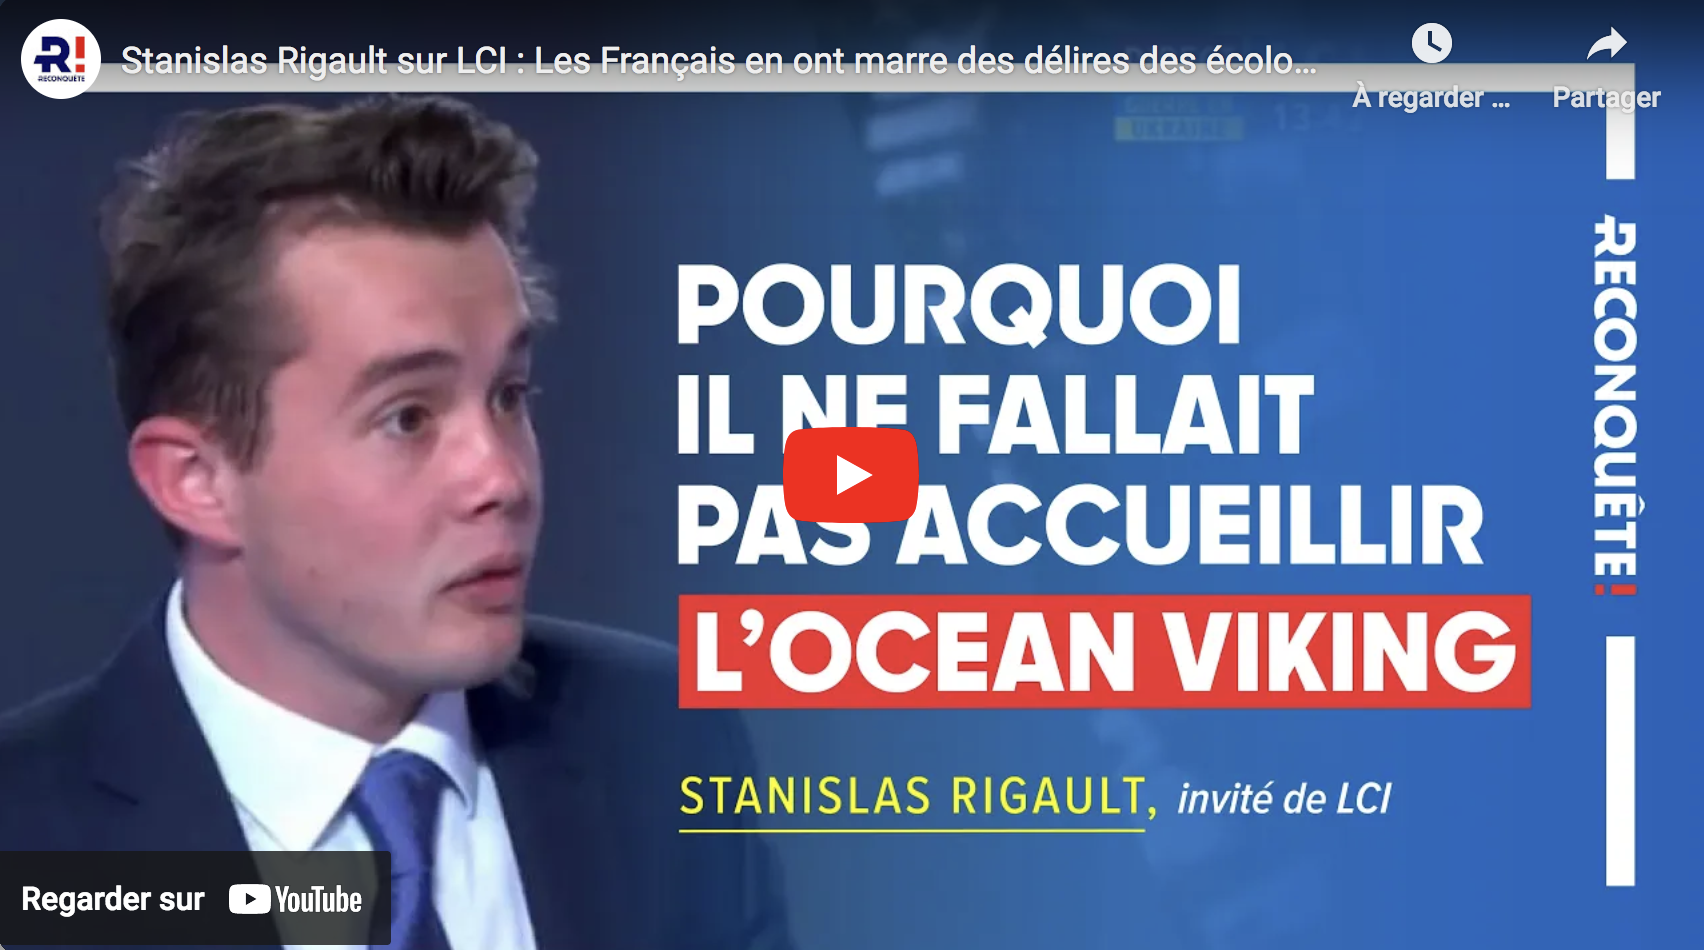 Stanislas Rigault : “Les Français en ont marre des délires des écolos-gauchistes” (VIDÉO)